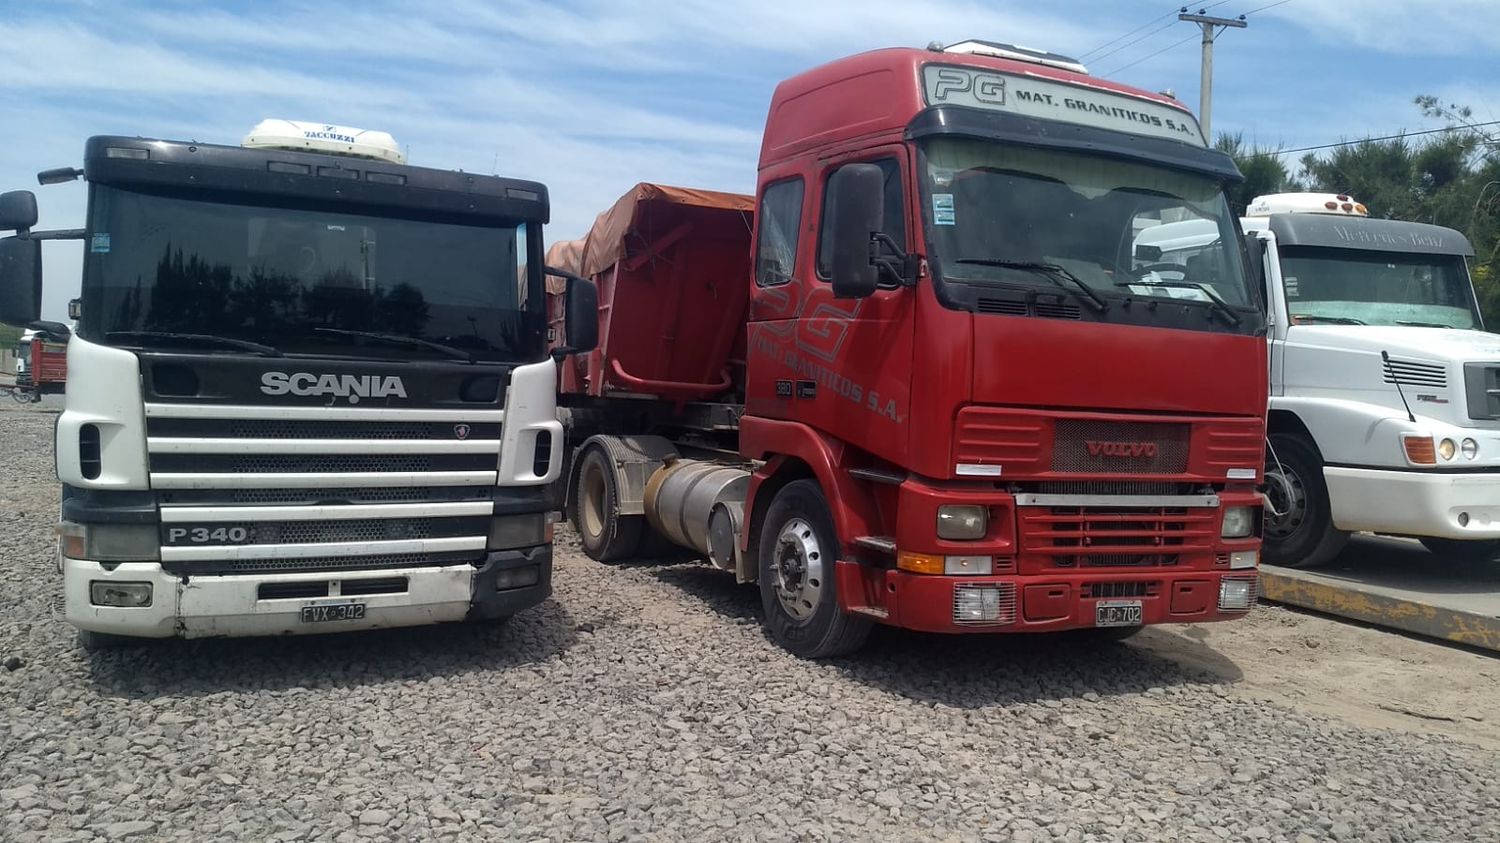 Dos camiones areneros retenidos por evadir el control de cargas